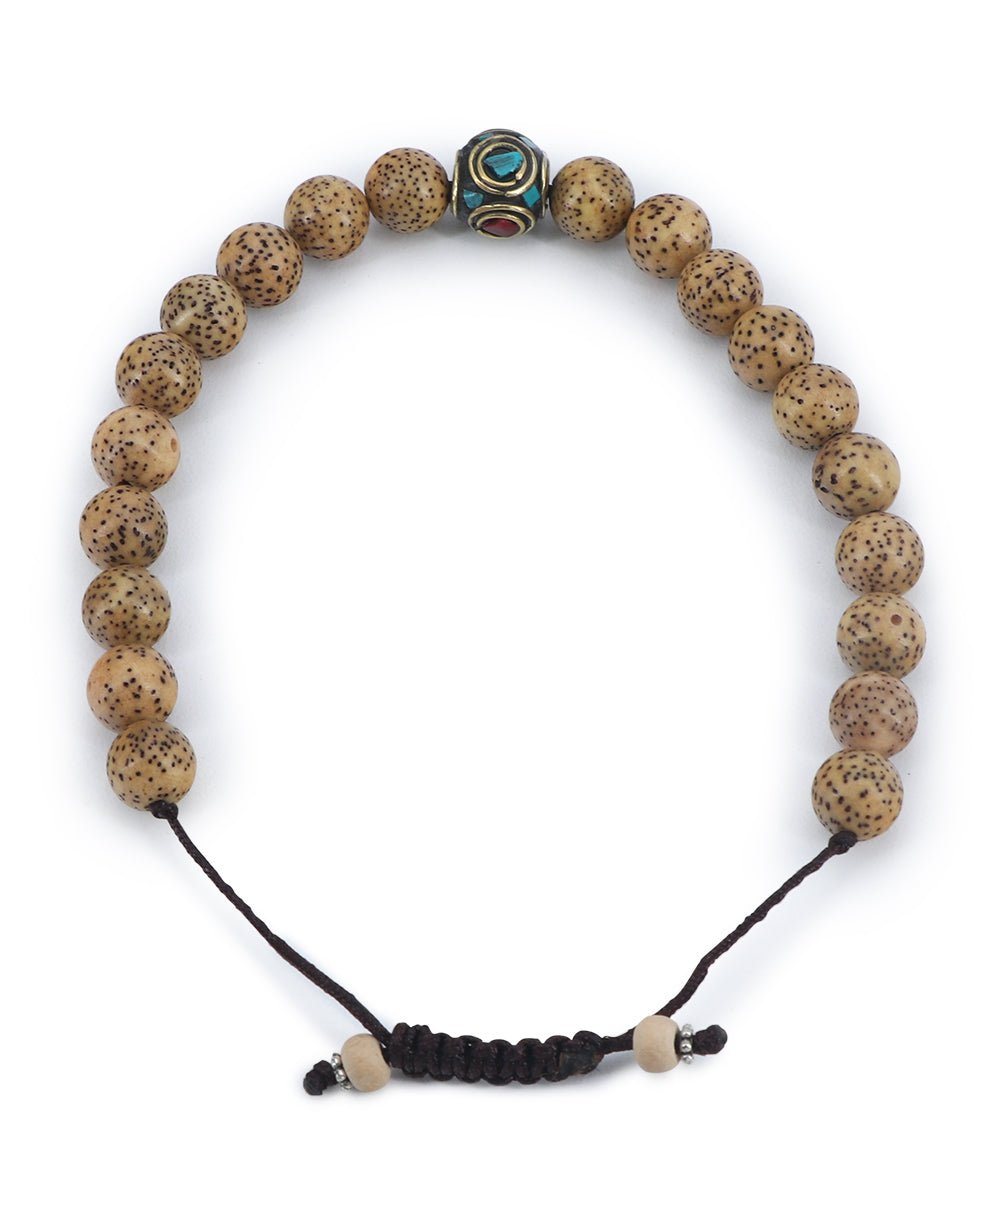 Lotus Seed Wrist Mala with Inlays, 21 Beads – Buddha Groove